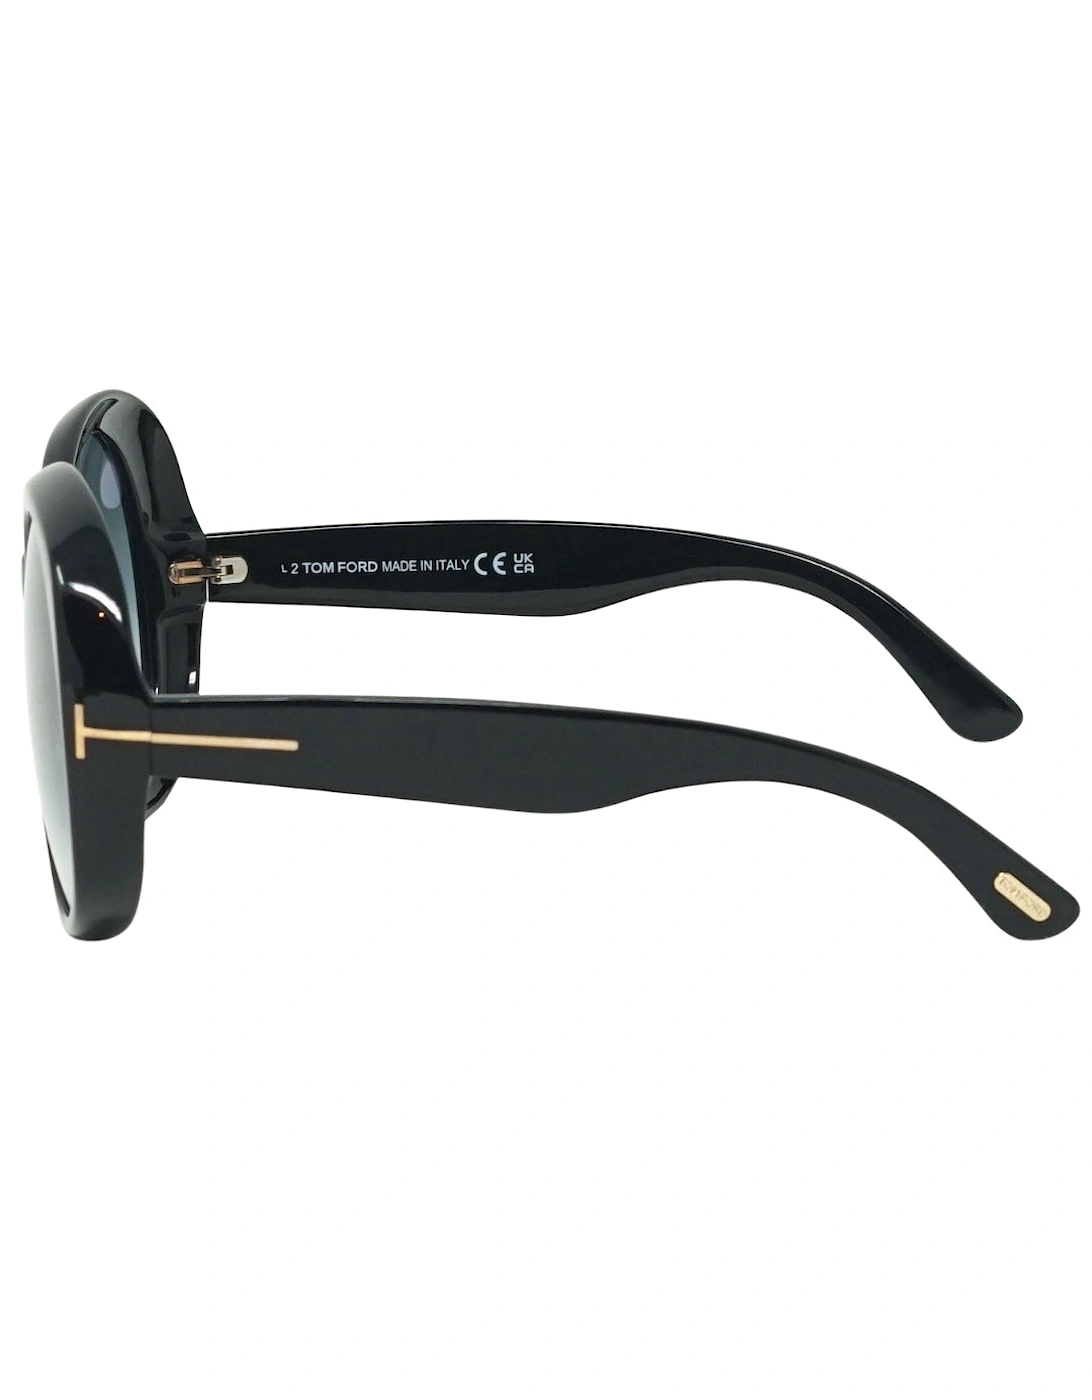 Annabelle FT1010 01B Black Sunglasses